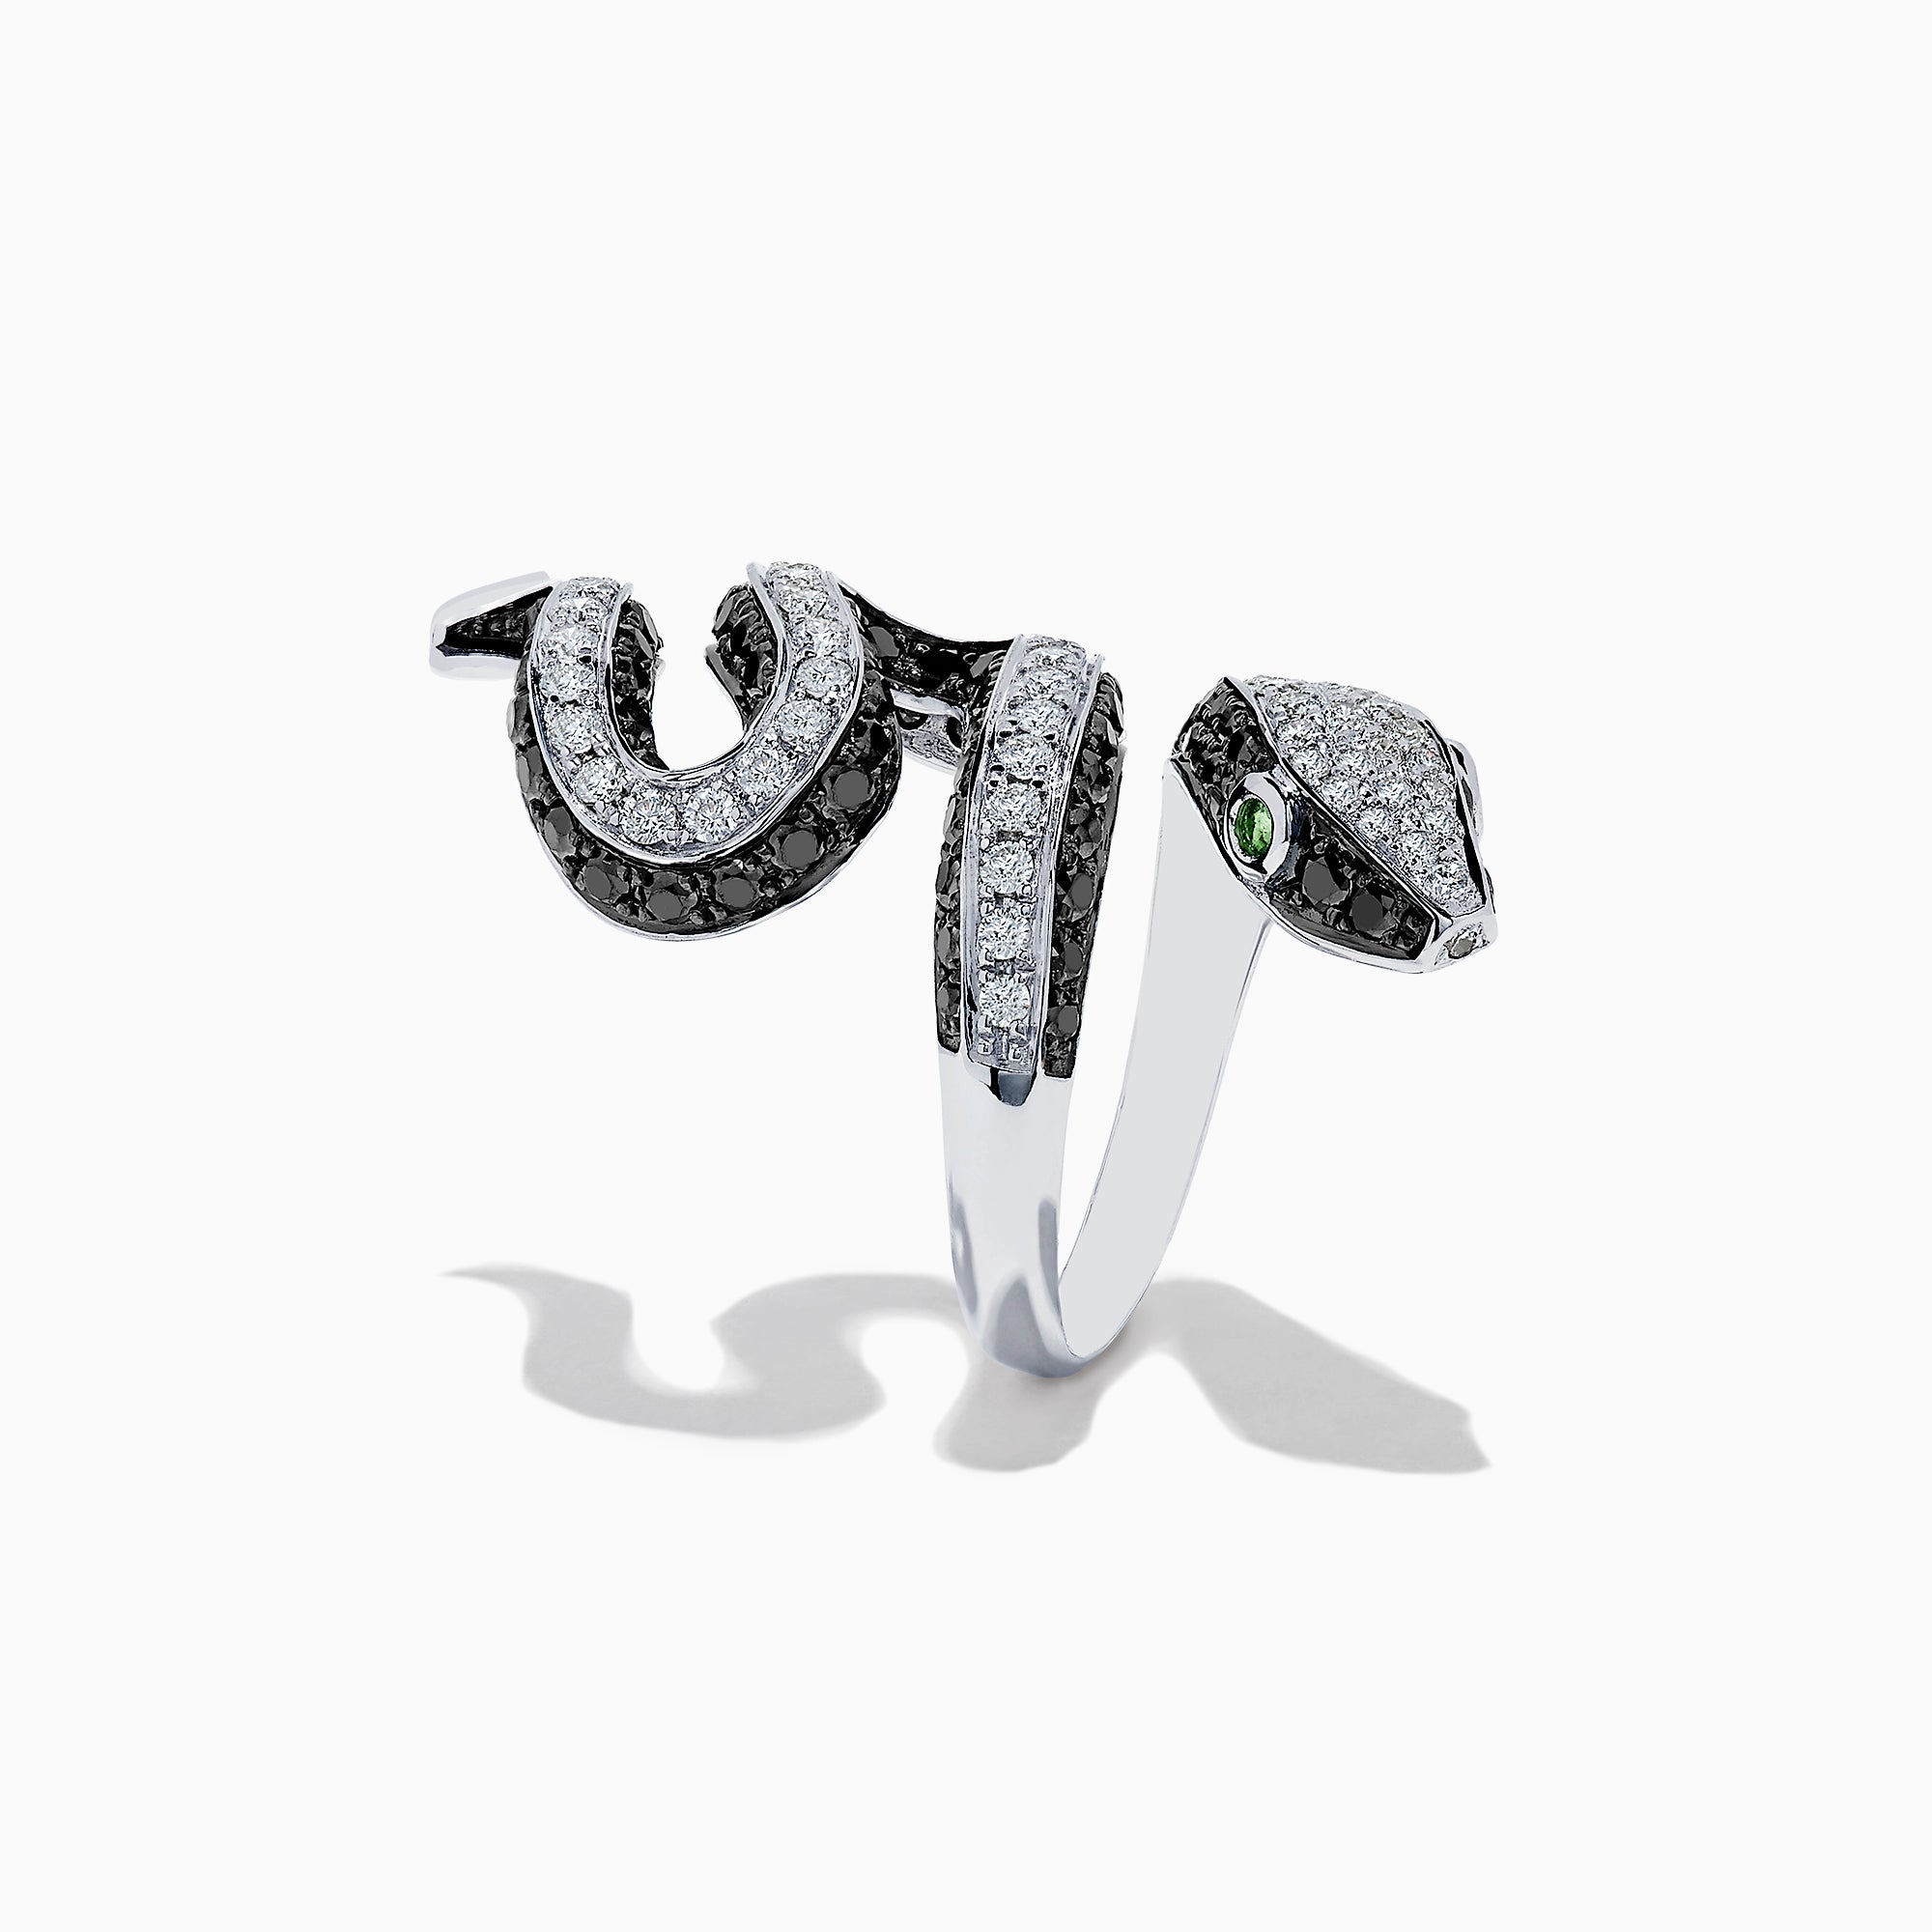 Effy Safari 14K White Gold Black and White Diamond Snake Ring, 3.25 TCW